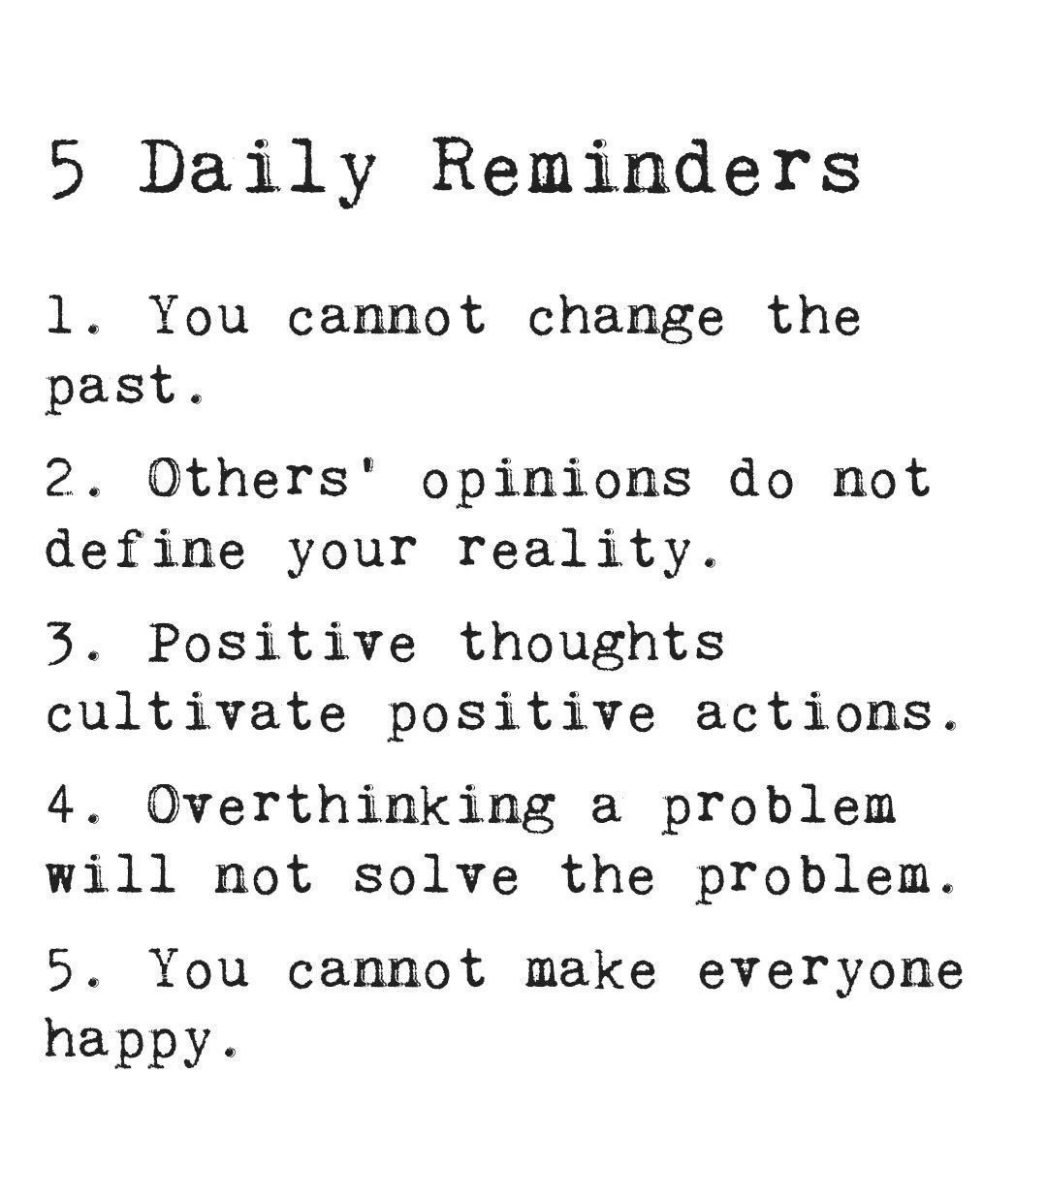 Daily Reminders : इन 5 बातों को अपनाएं, जीवन सुखी बनाएं